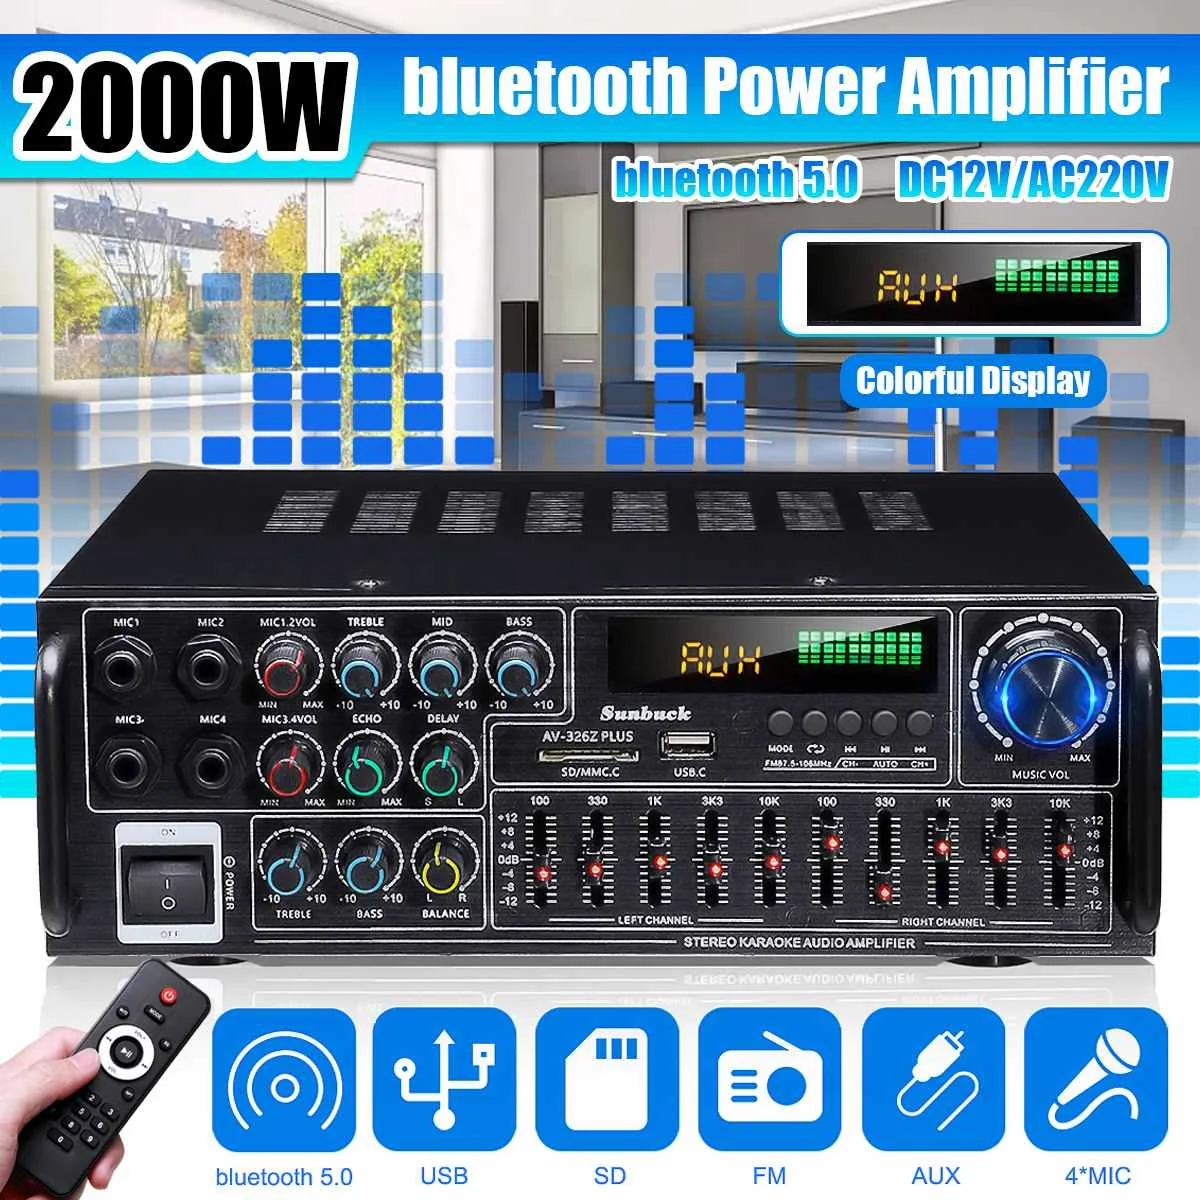 Фото 2000 Вт домашний автомобильный стереоусилитель bluetooth объемный звук USB SD AMP FM AUX 4